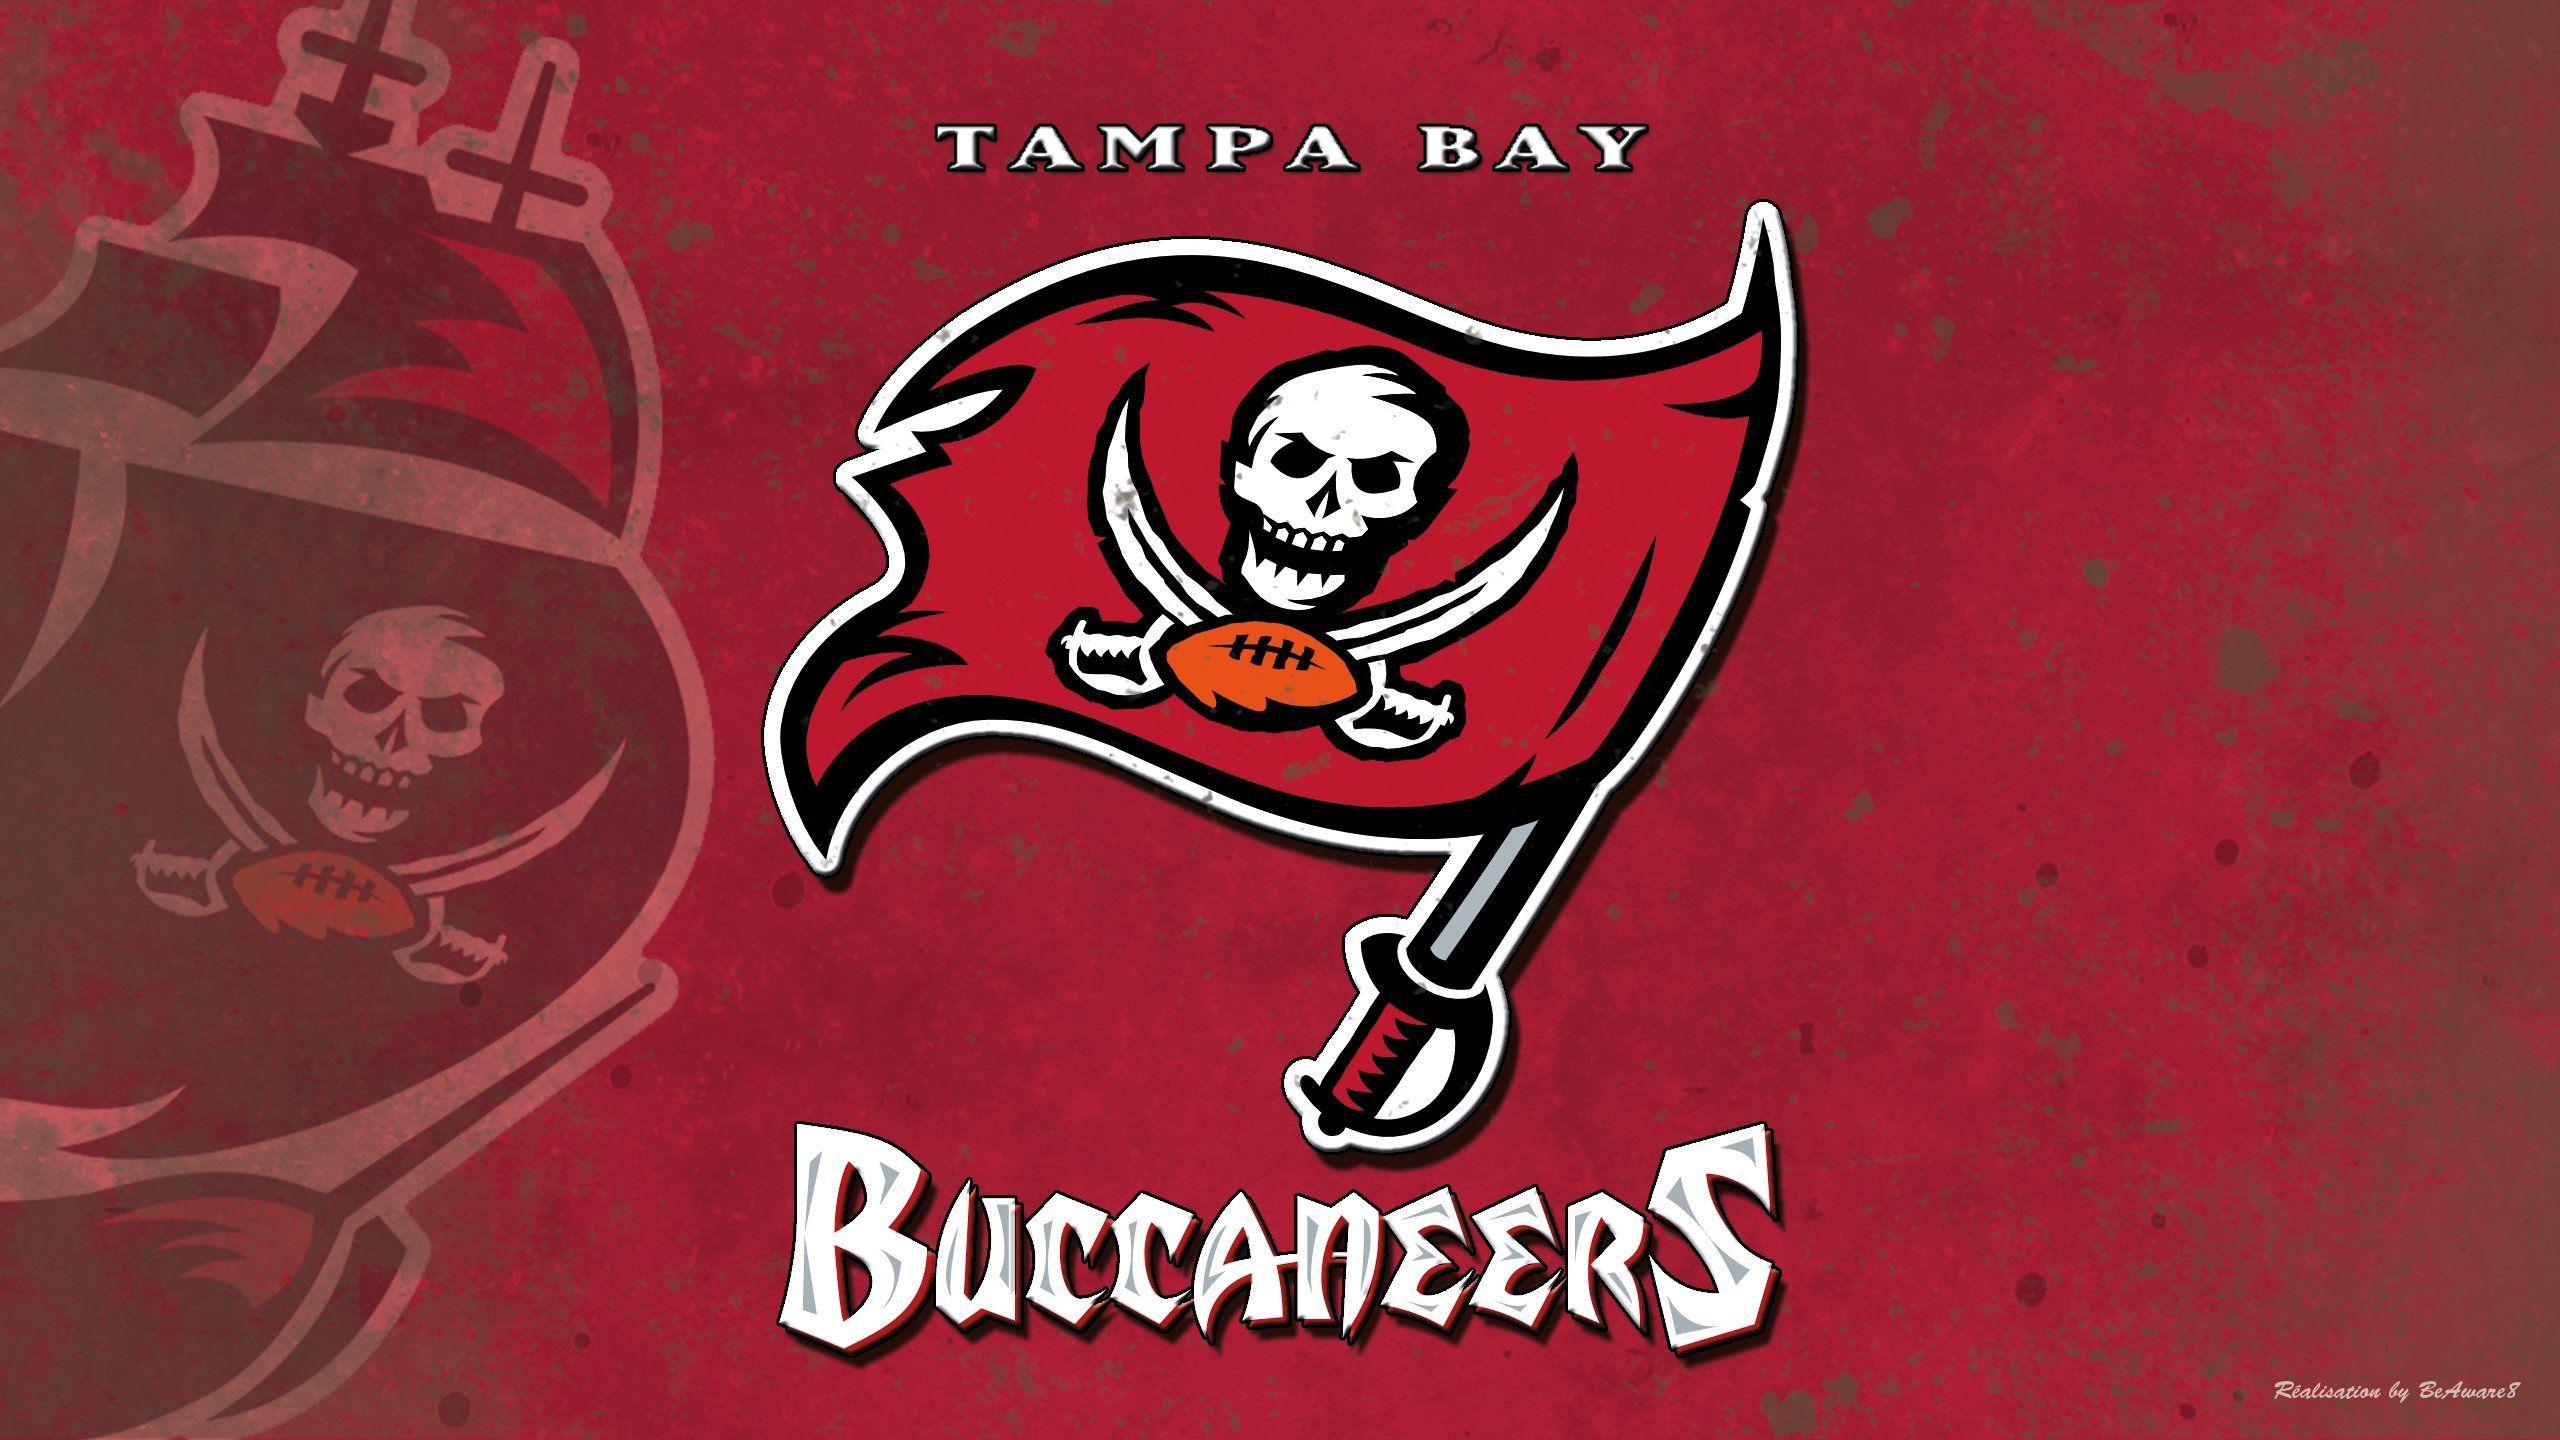 Tampa Bay Buccaneers Wallpapers - Top